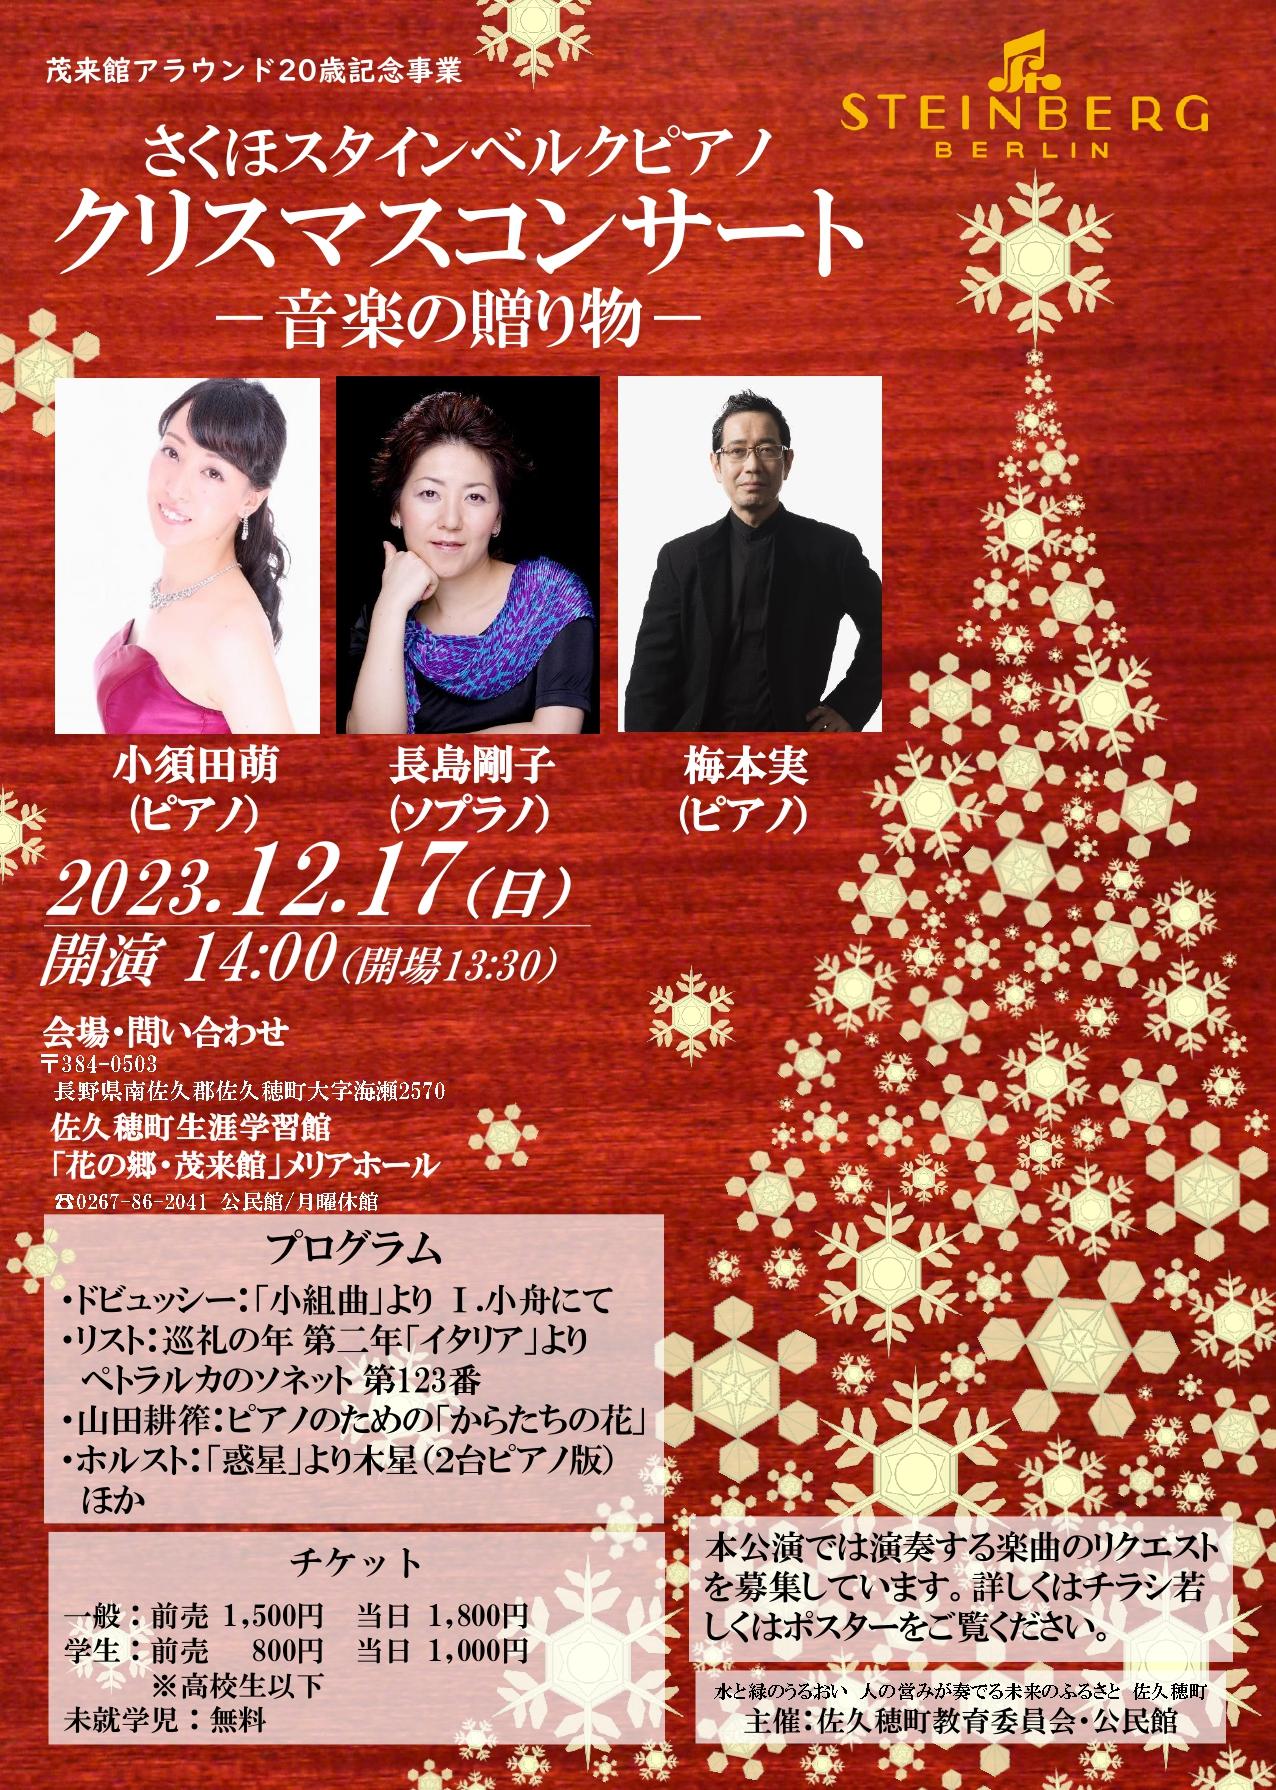 さくほスタインベルクピアノ『クリスマスコンサート −音楽の贈り物−』開催のお知らせ